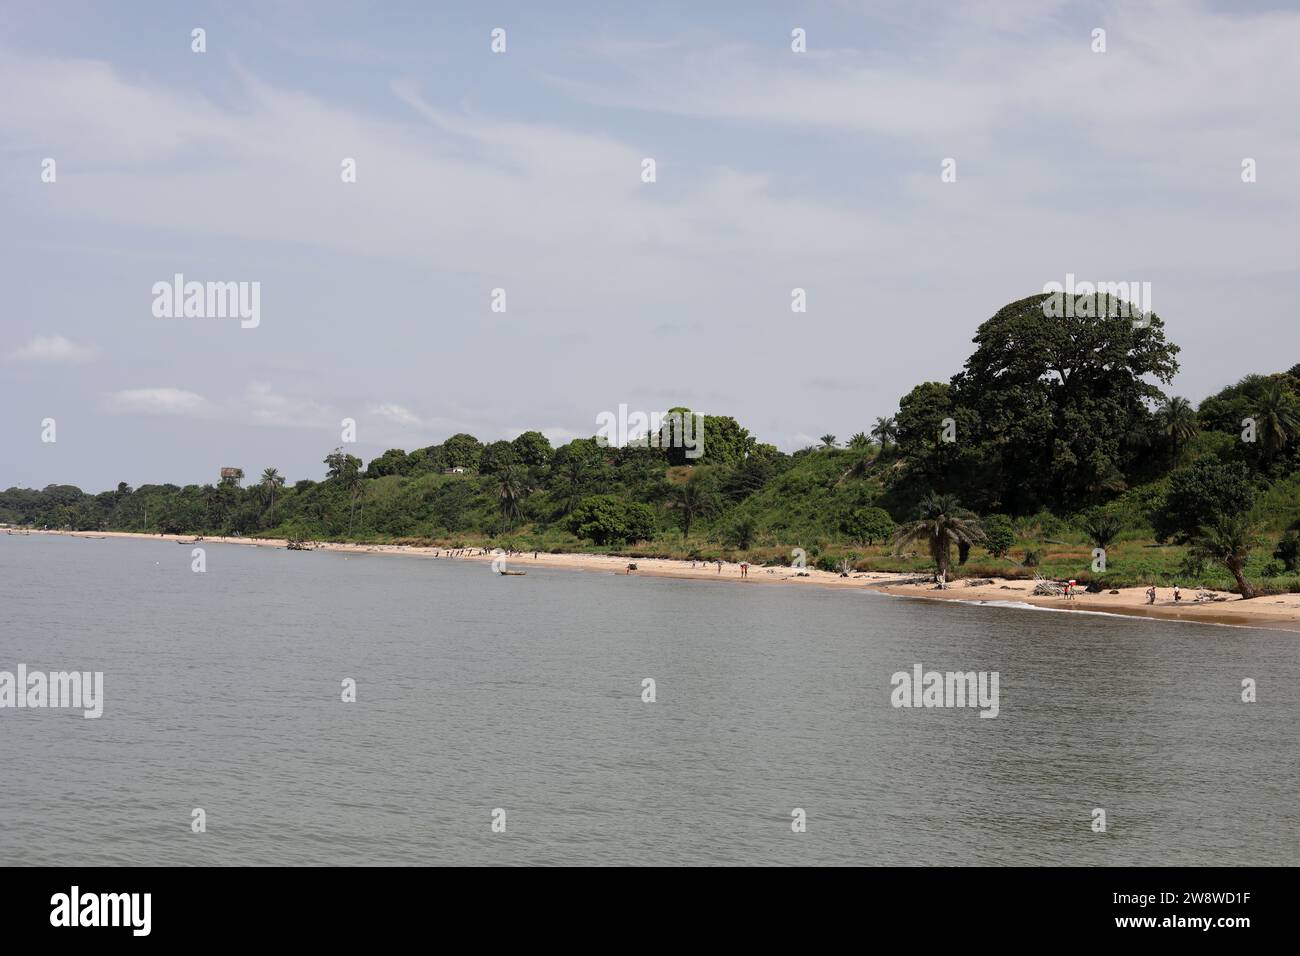 Allgemeine Ansichten des Strandlebens in Lungi-Town, Freetown, Sierra Leone, Afrika. Stockfoto